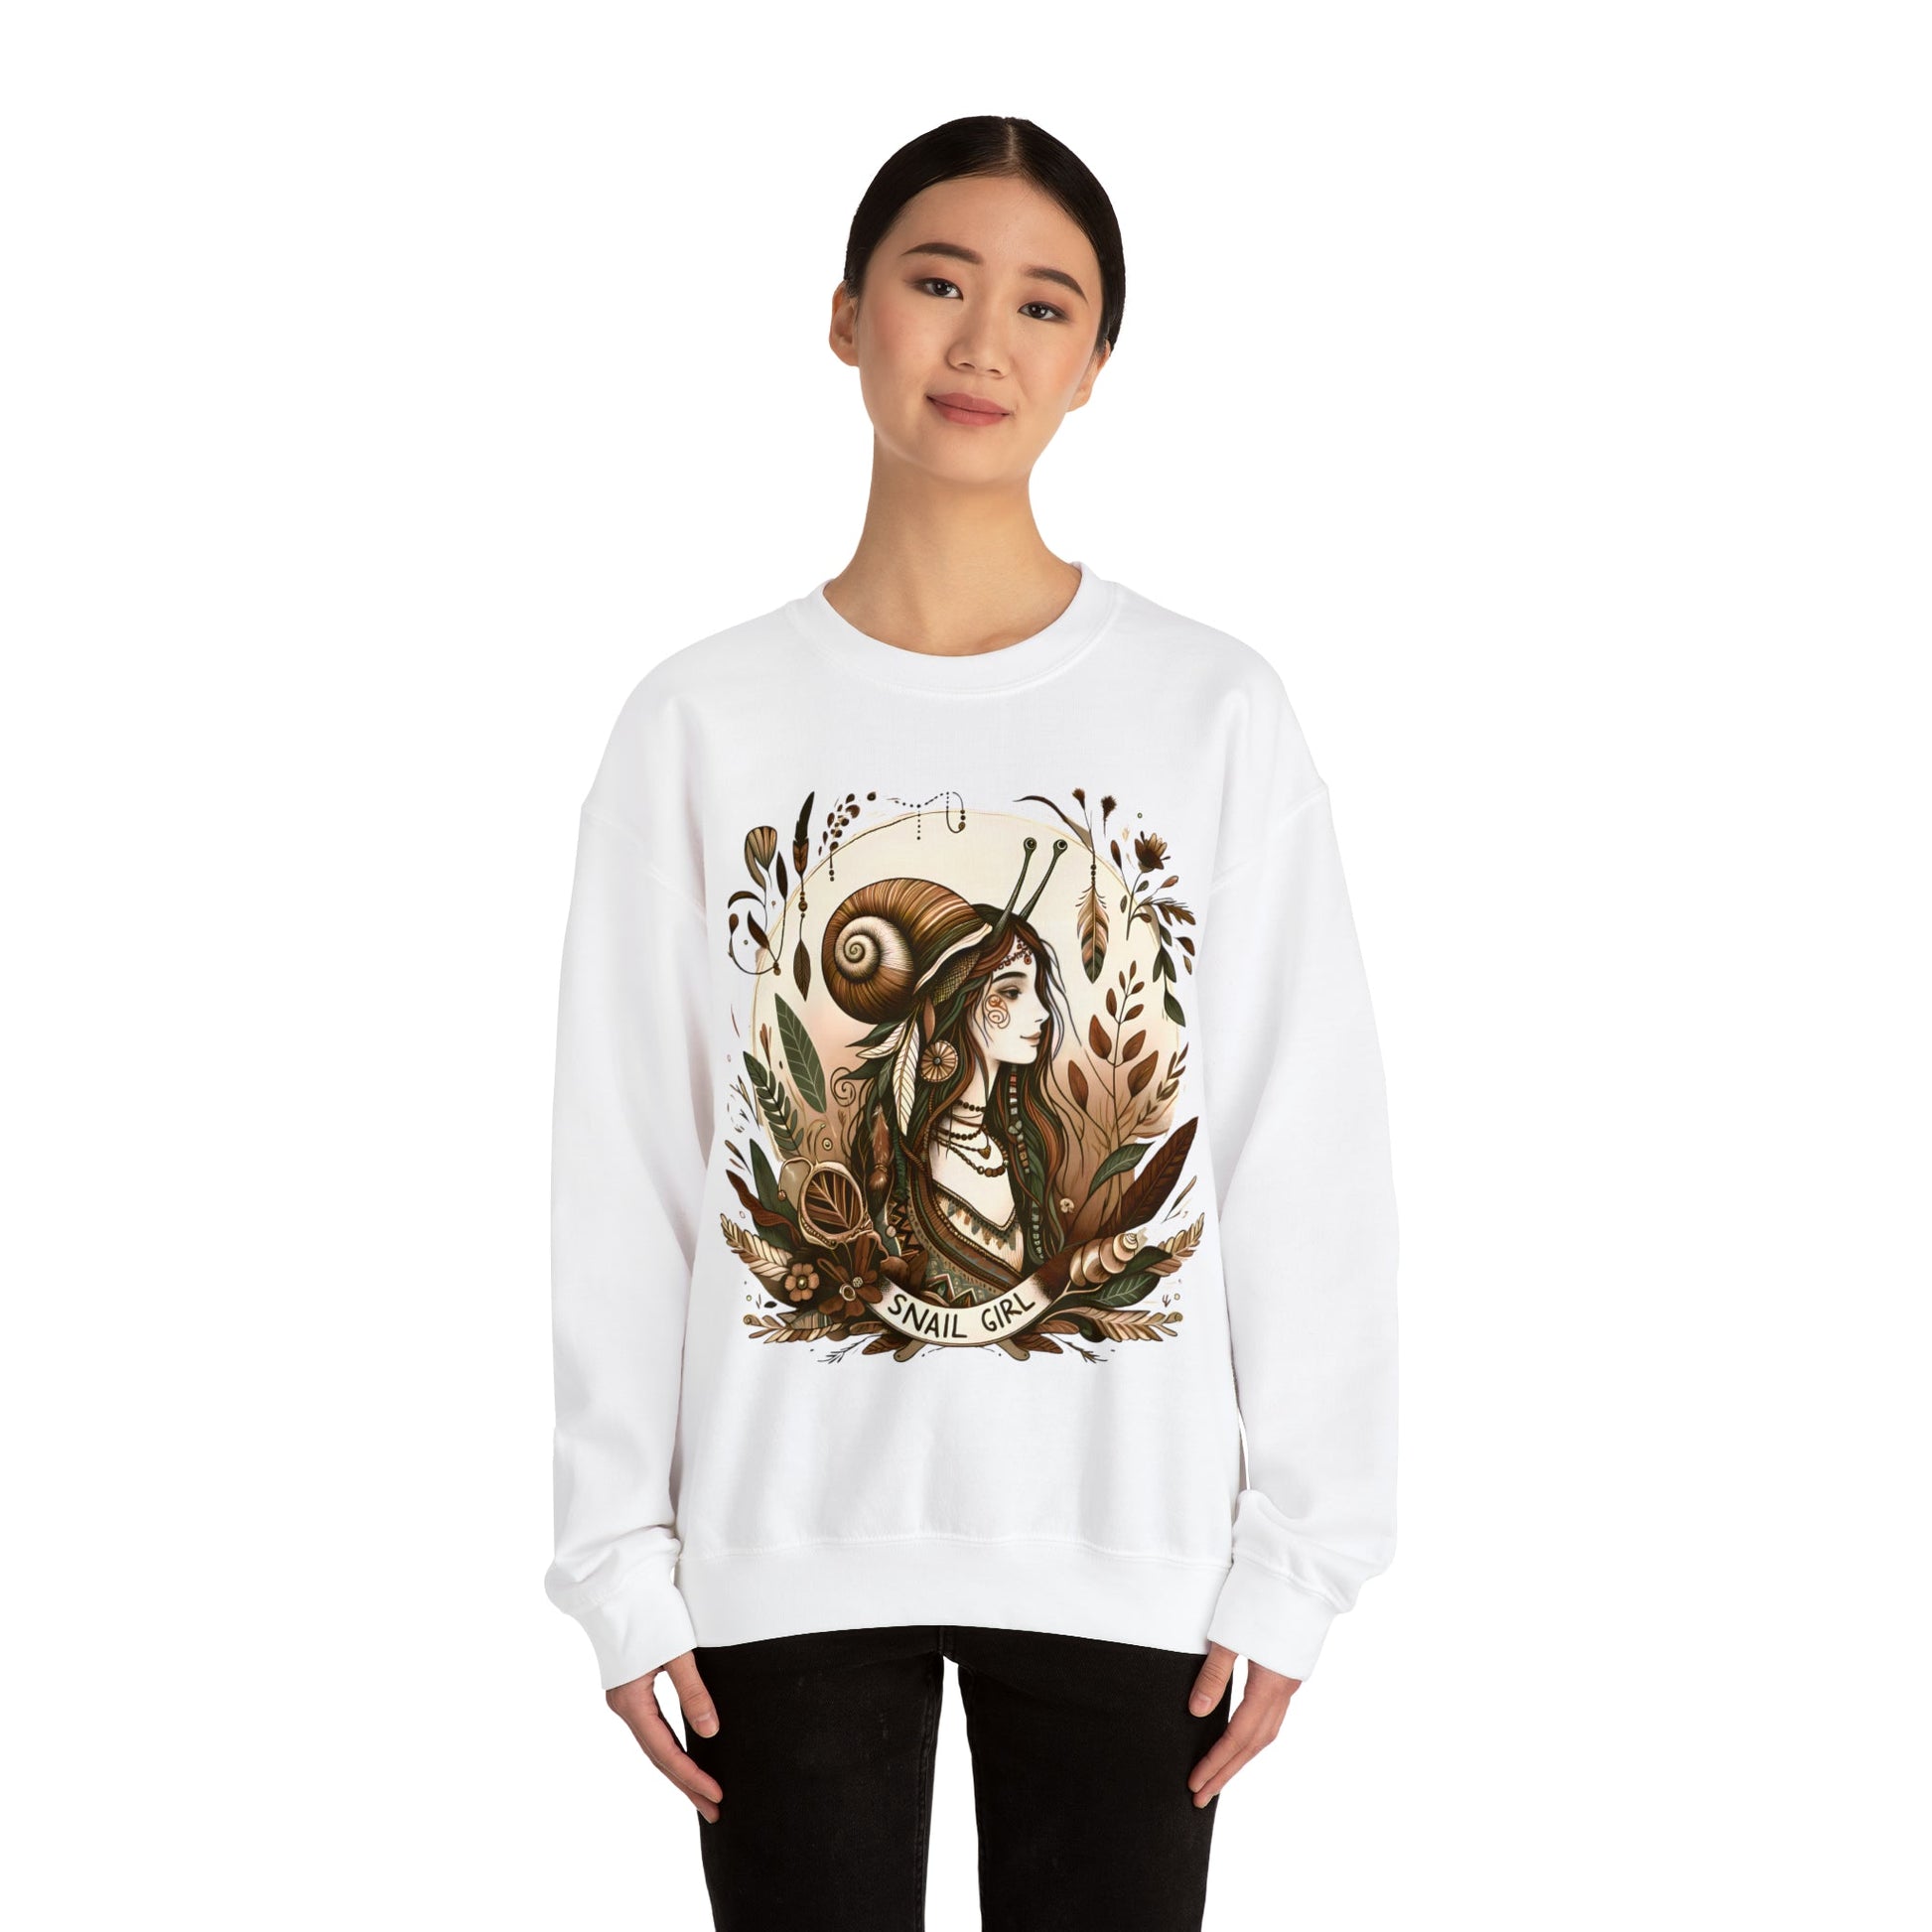 Fairycore Snail Girl Sweatshirt